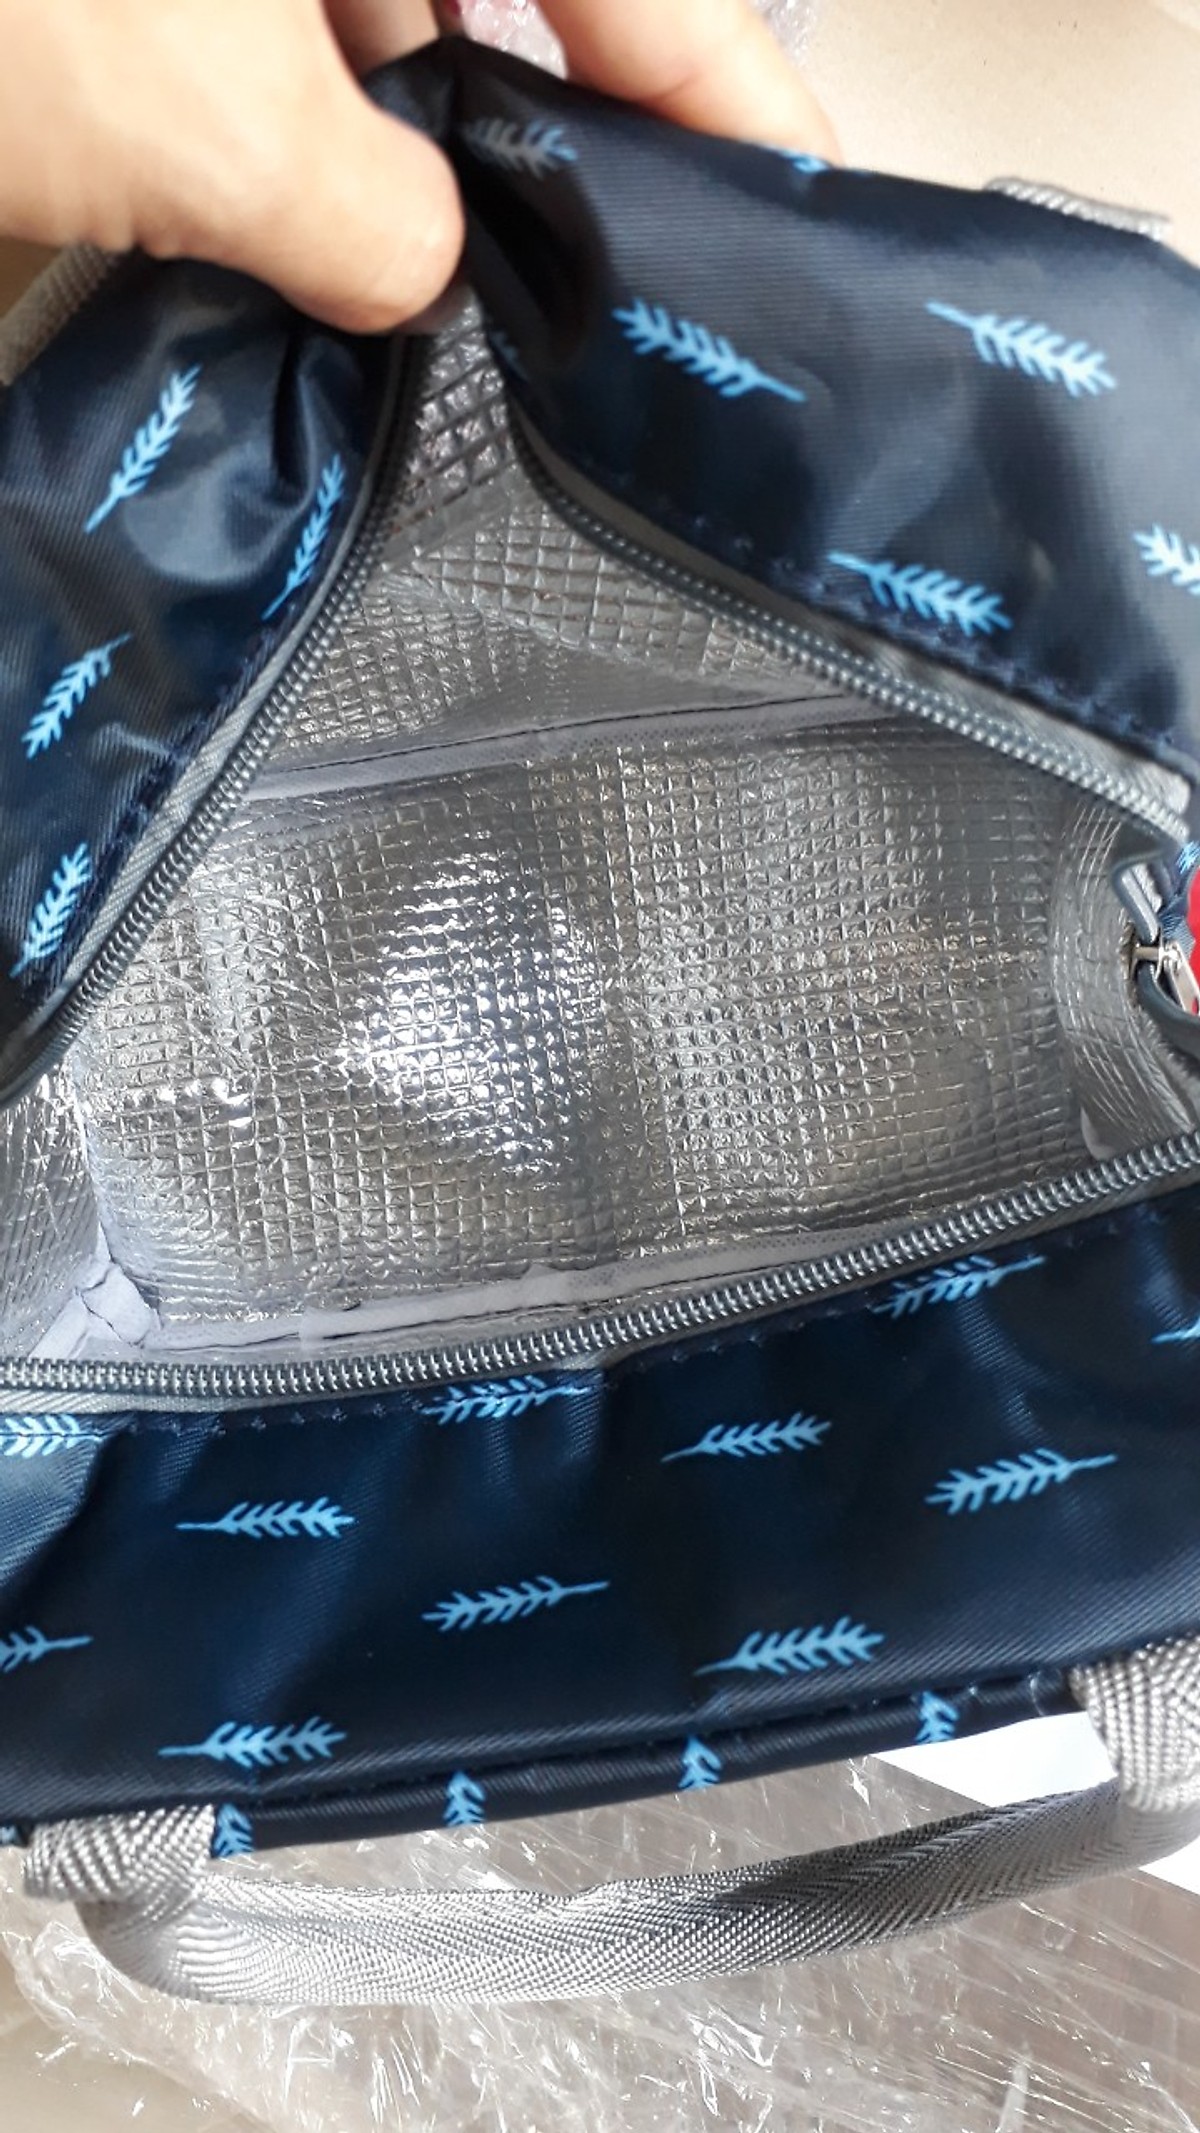 Túi vải đựng cơm có lớp giấy bạc giữ nhiệt mẫu bản ngang - màu ngẫu nhiên